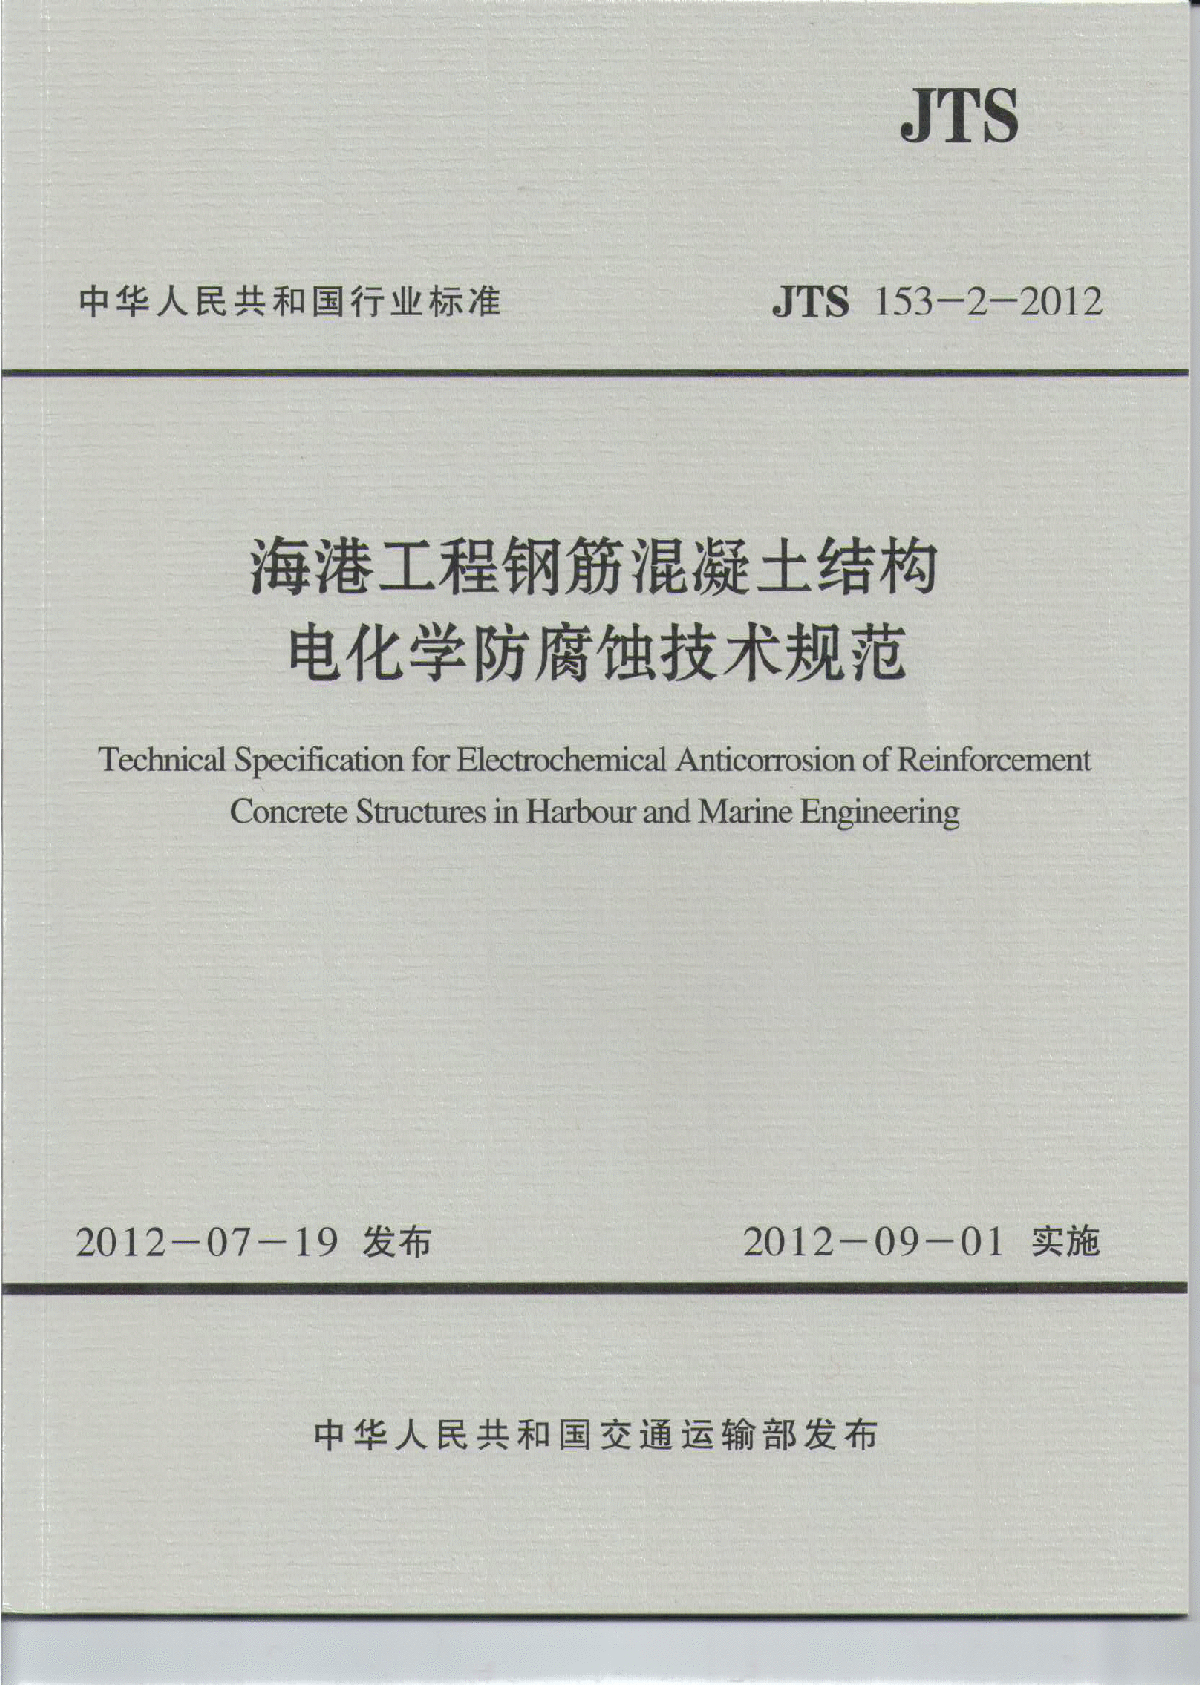 《海港工程钢筋混凝土结构电化学防腐蚀技术规范》(JTS 153-2-2012 )